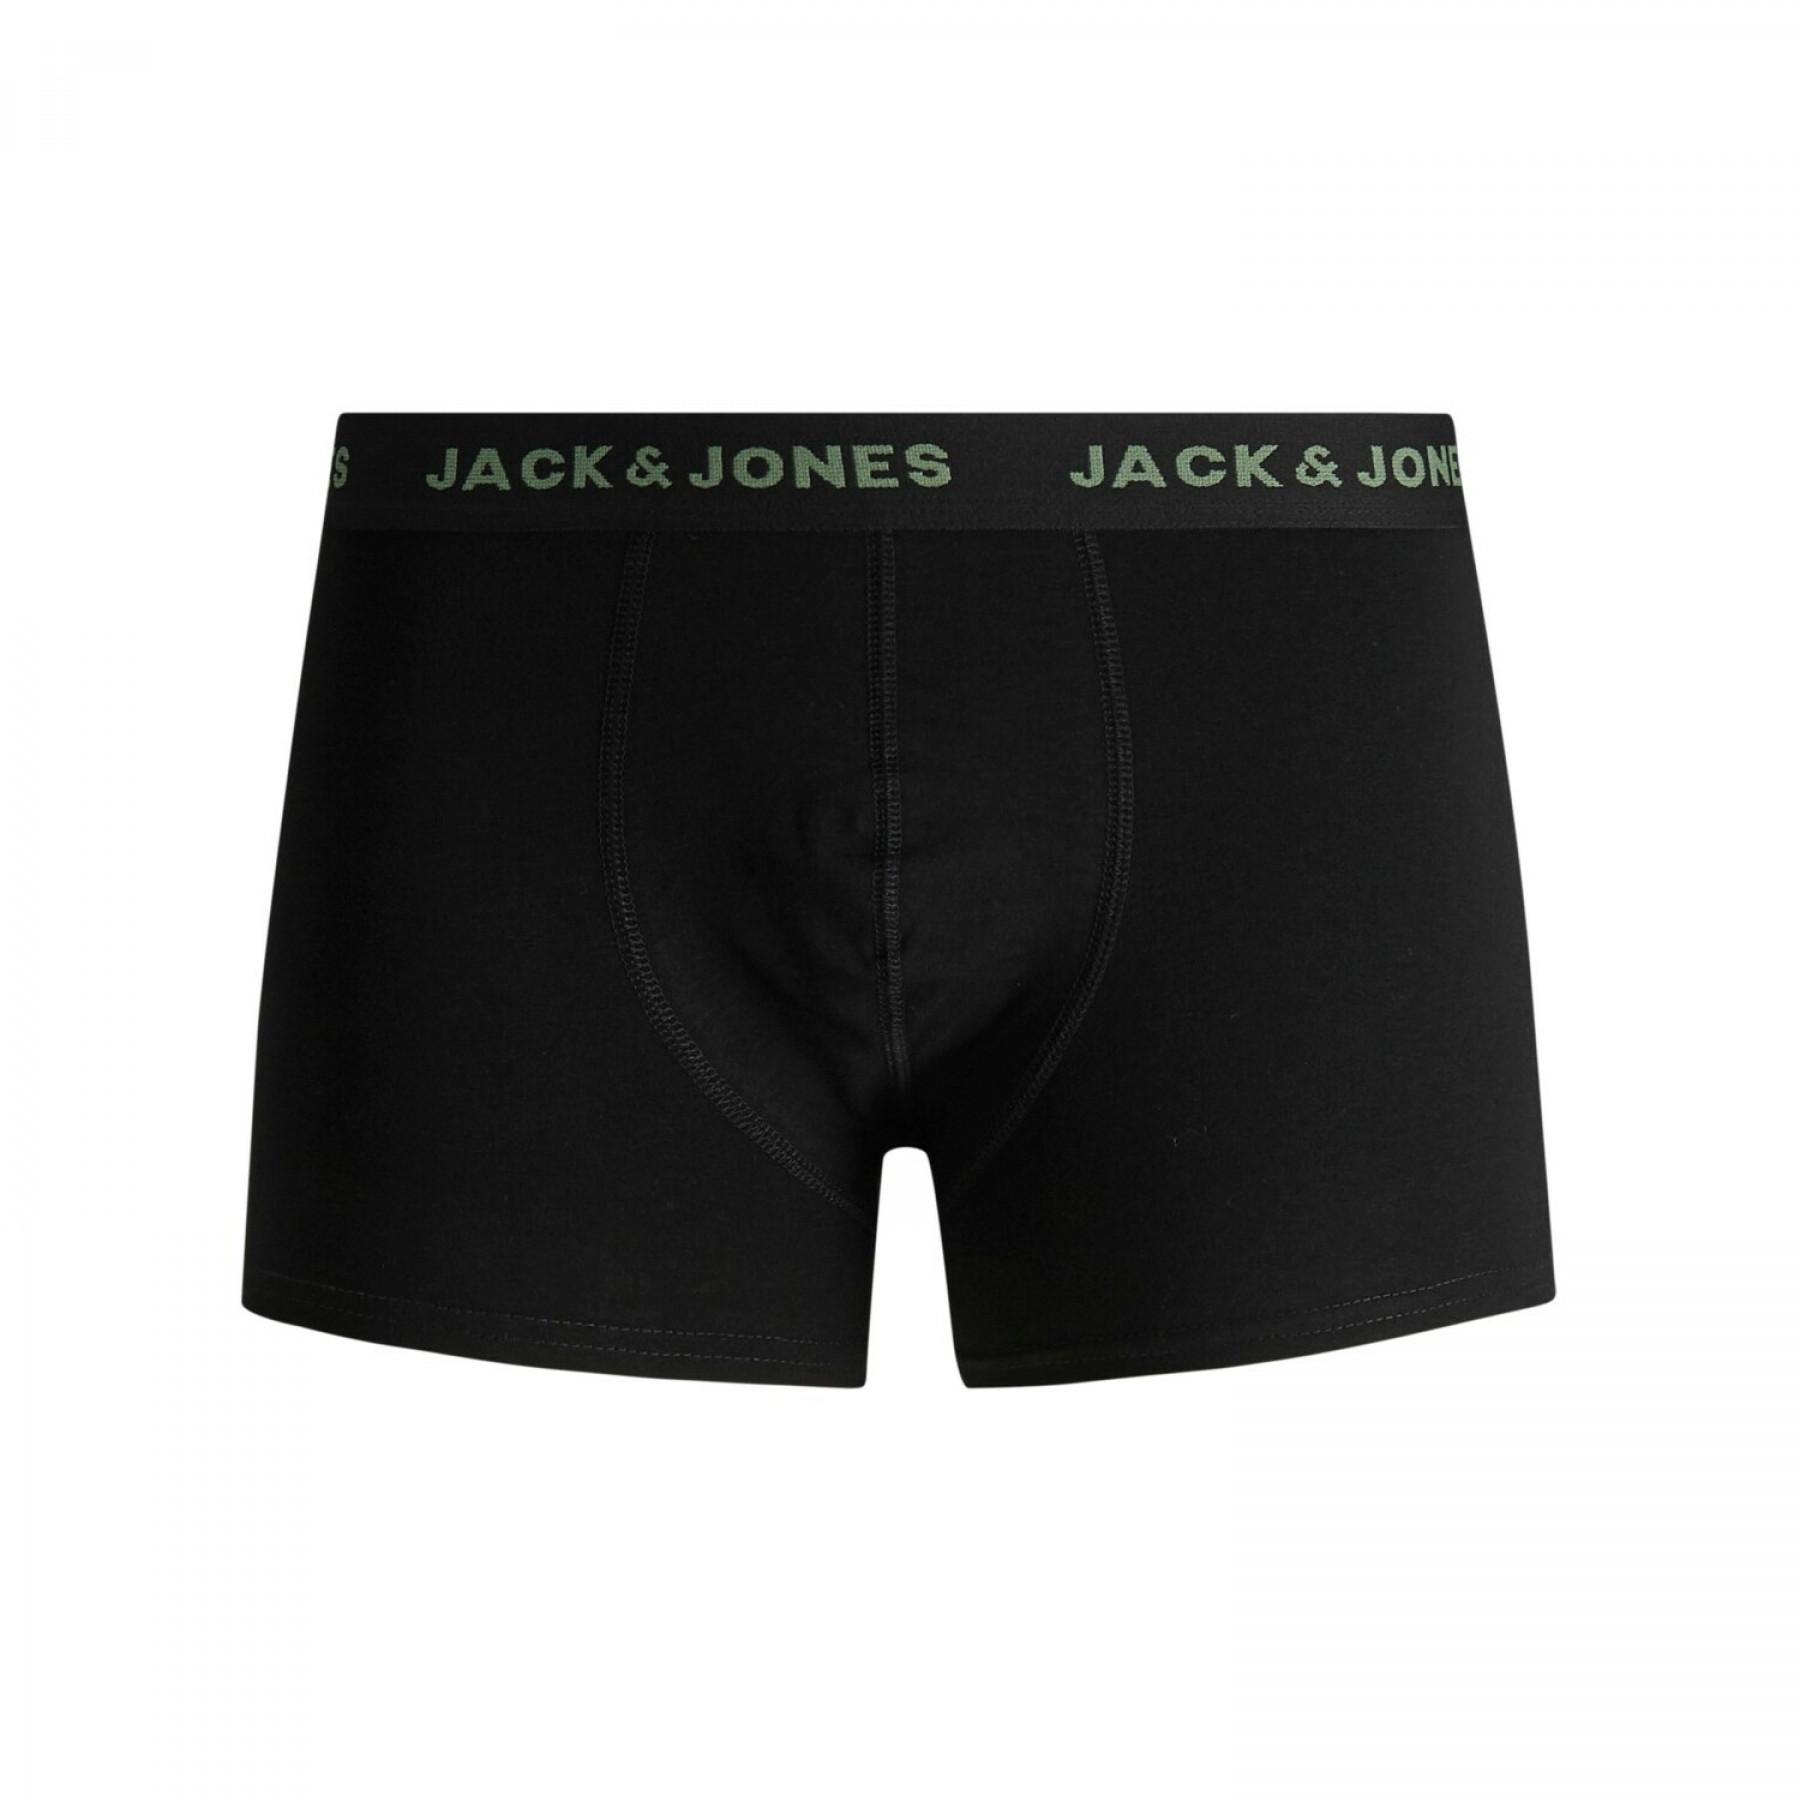 Packung mit 7 Boxershorts Jack & Jones Basic